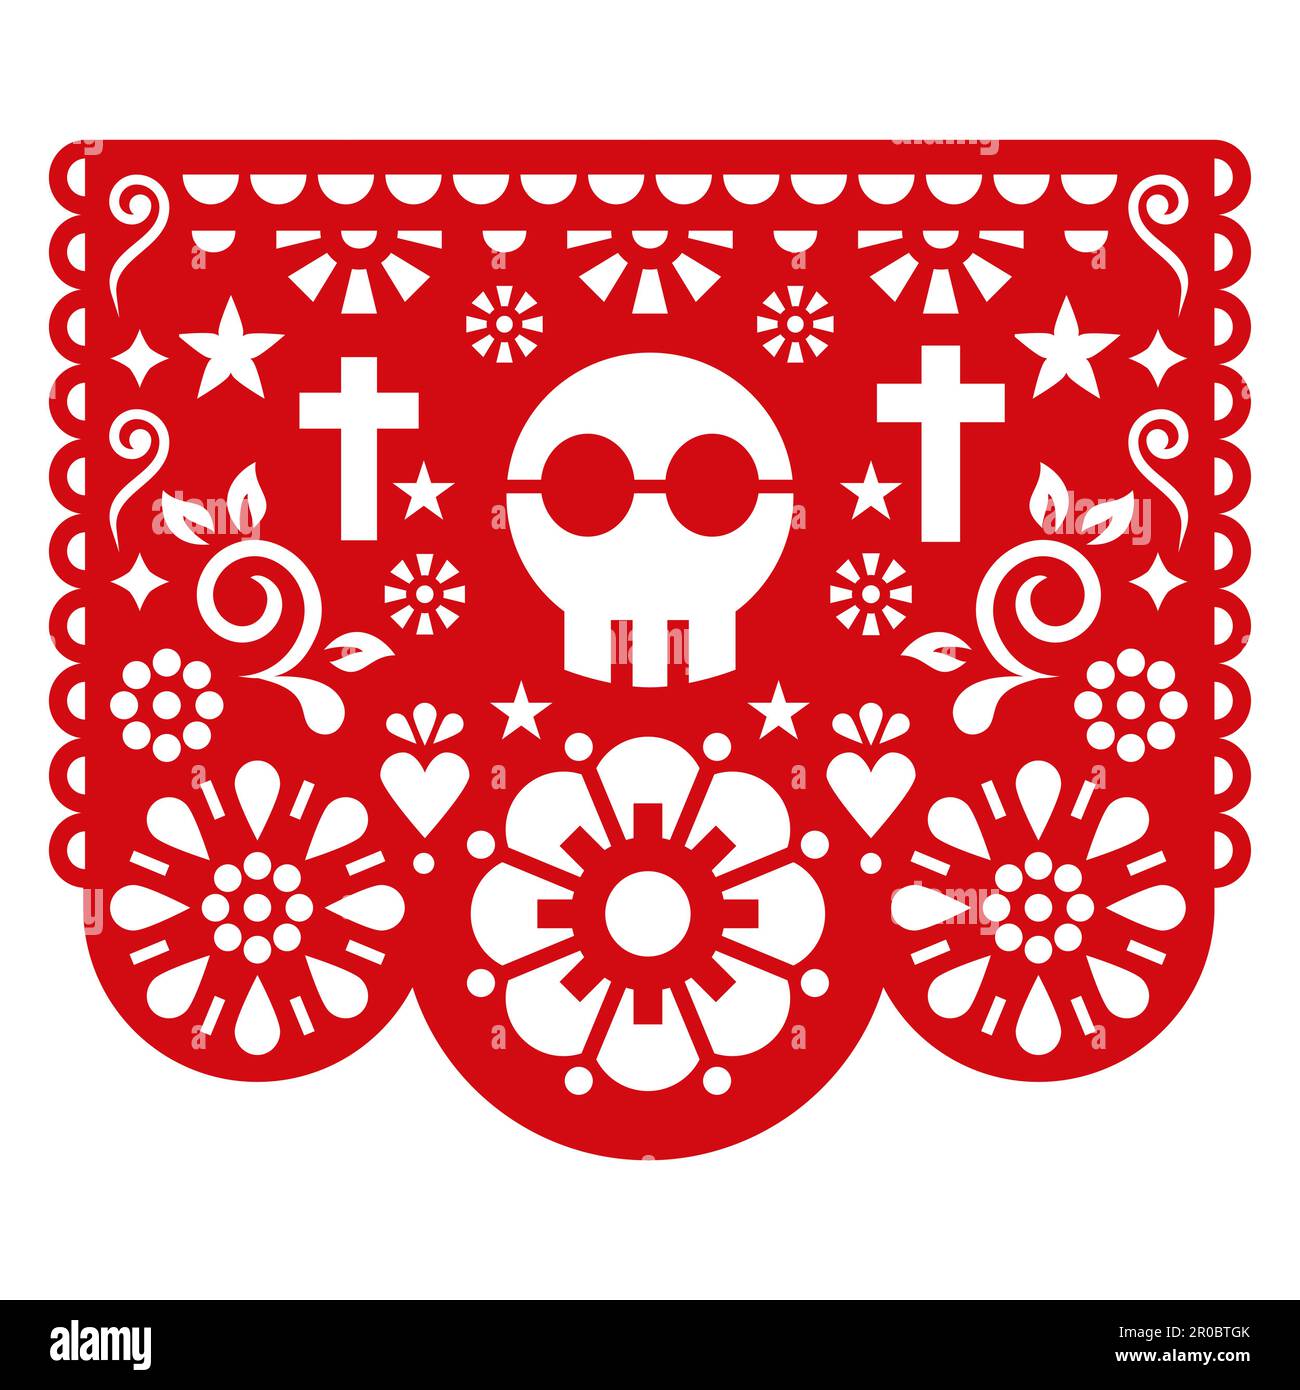 Halloween-Papel-Picado-Vektordesign mit Schädel, Blumen und Kreuzen, mexikanische Papierausschnitte - Partygirlande Stock Vektor